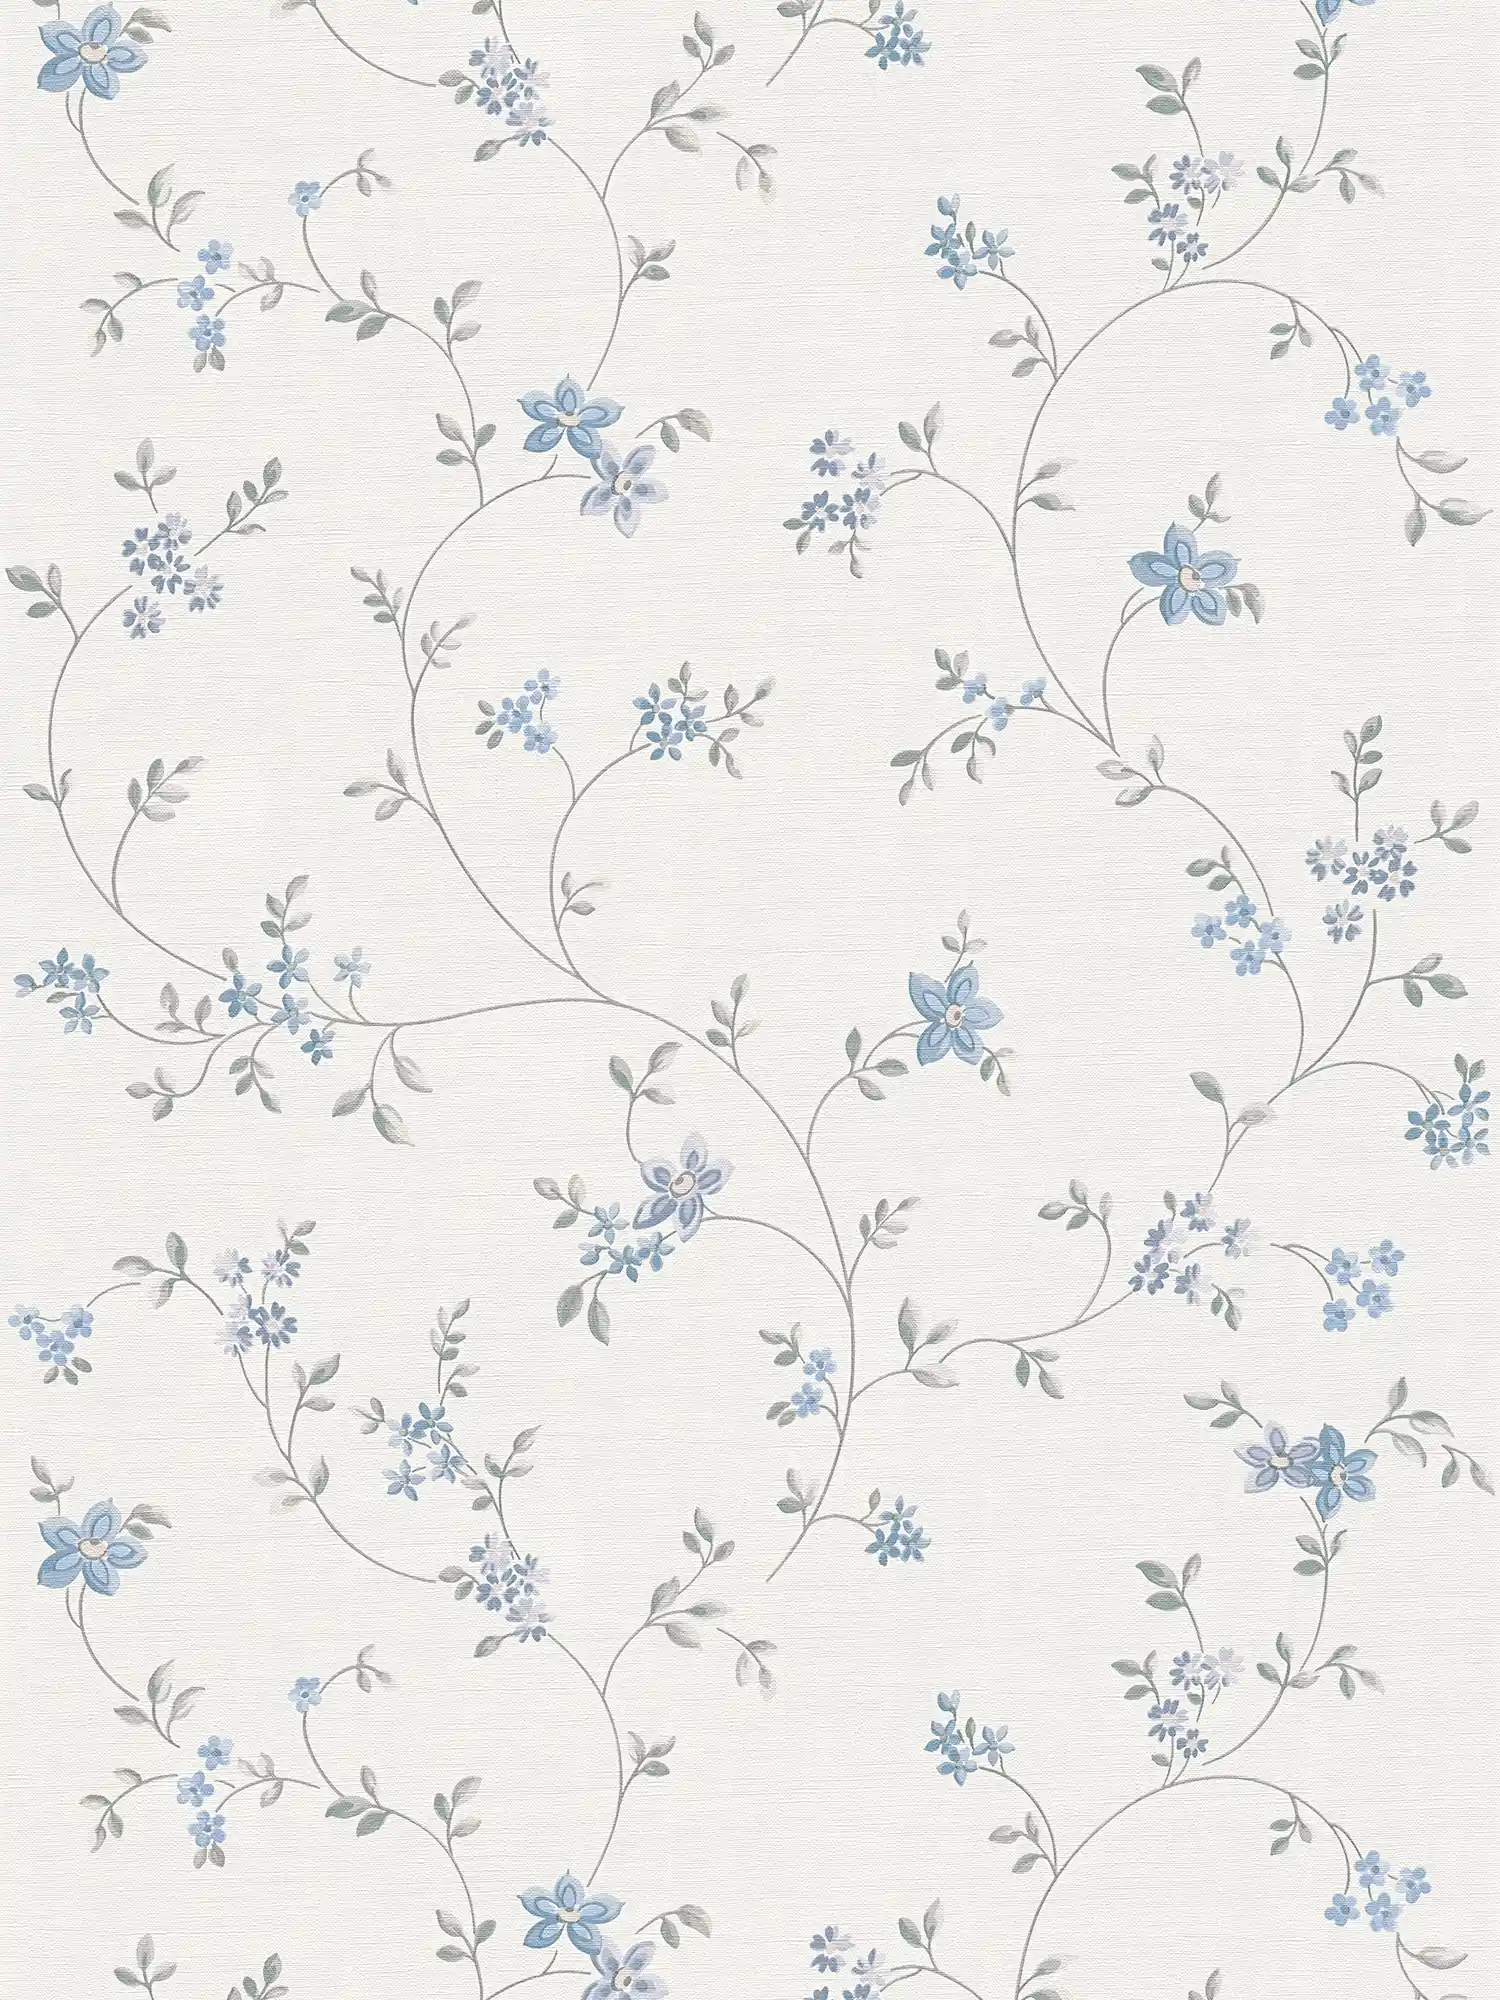 Vliesbehang met bloemenranken in landelijke stijl - crème, grijs, blauw
